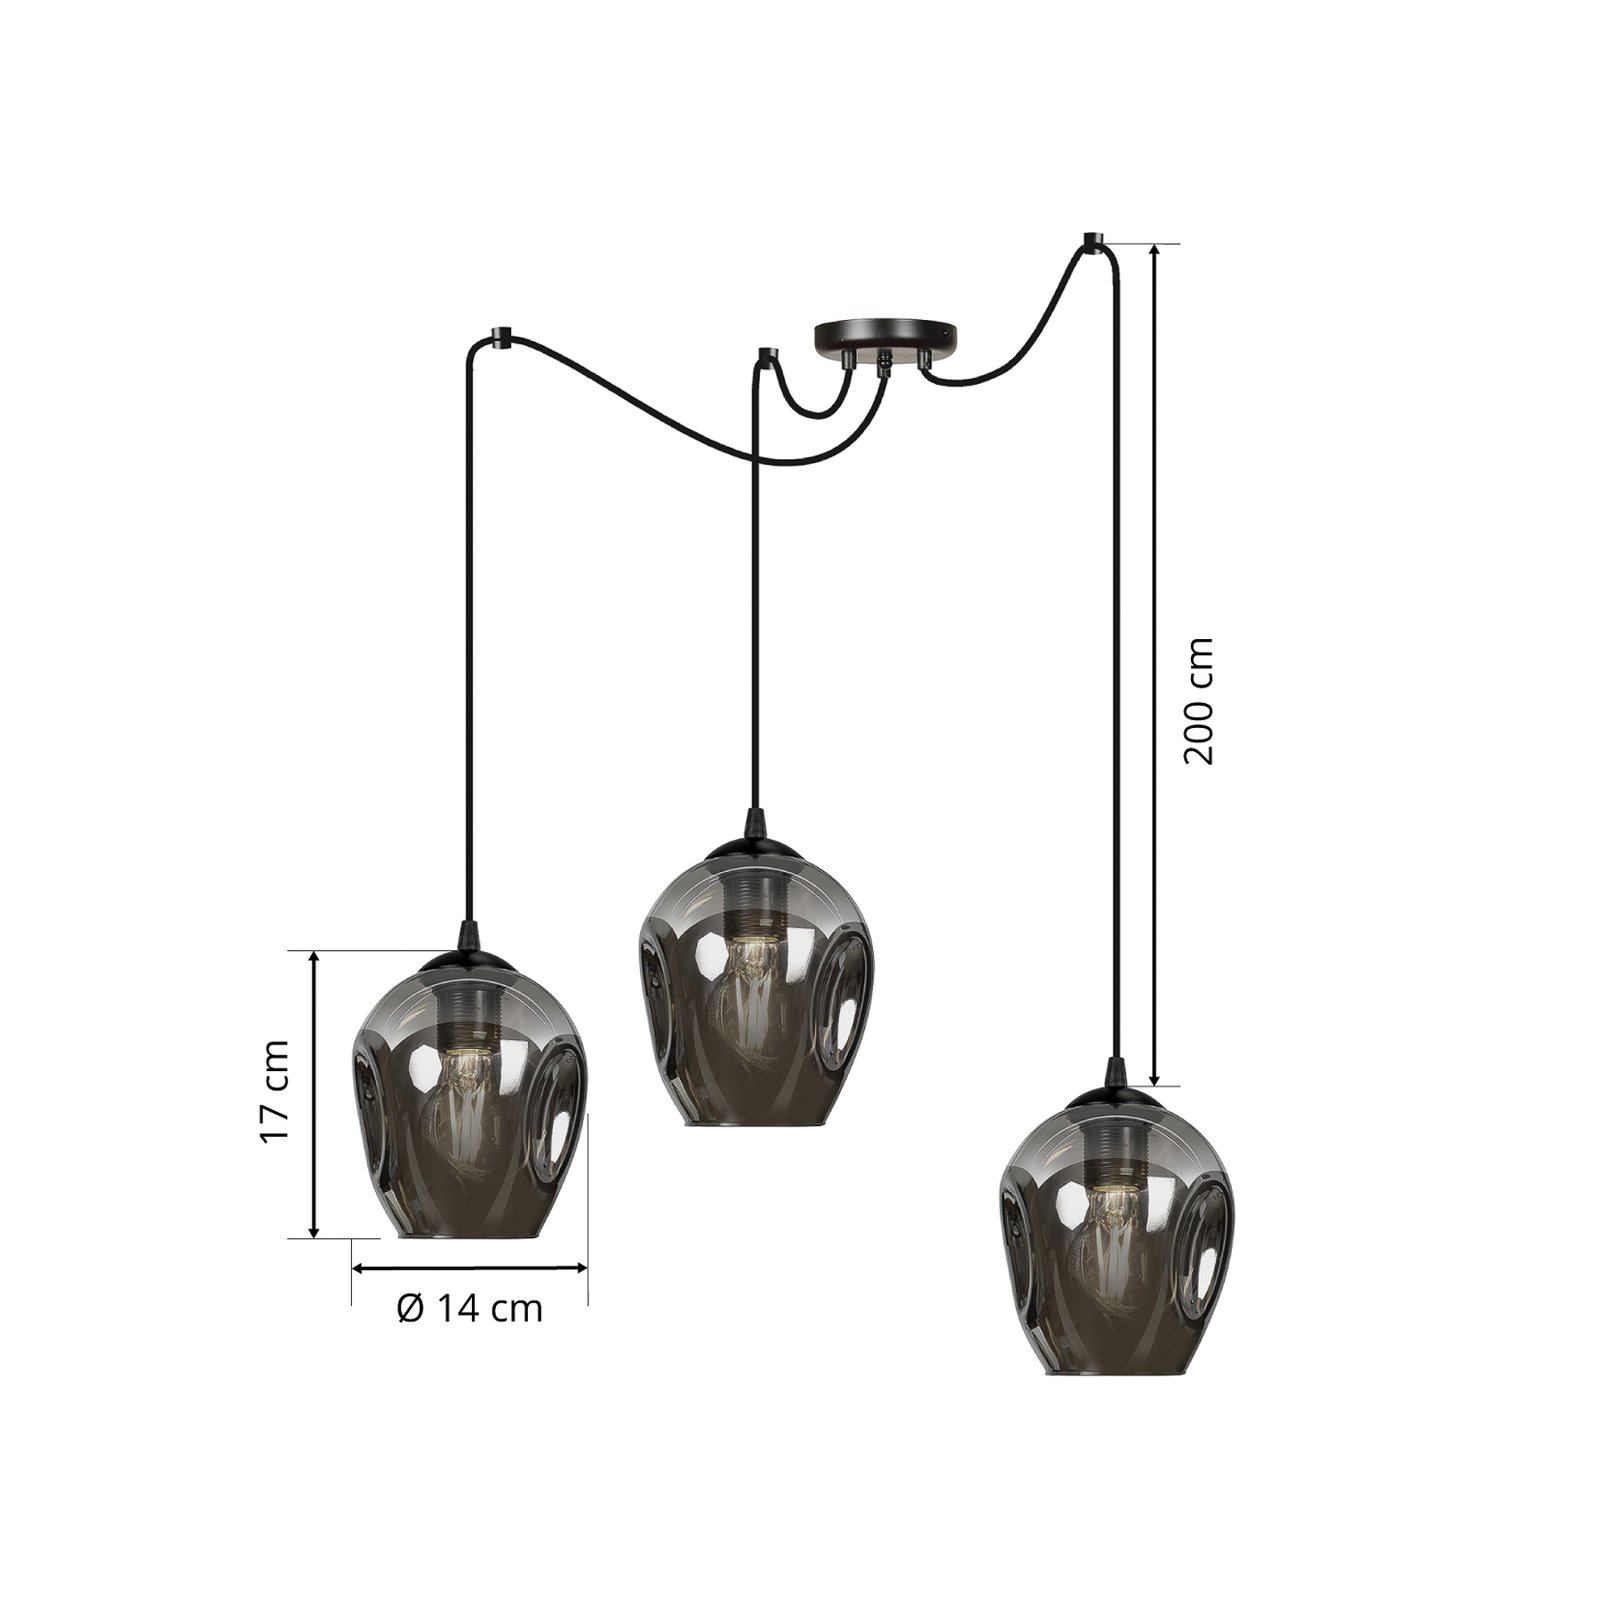 Hanglamp Starla decentraal 3-lamps, glas grafiet